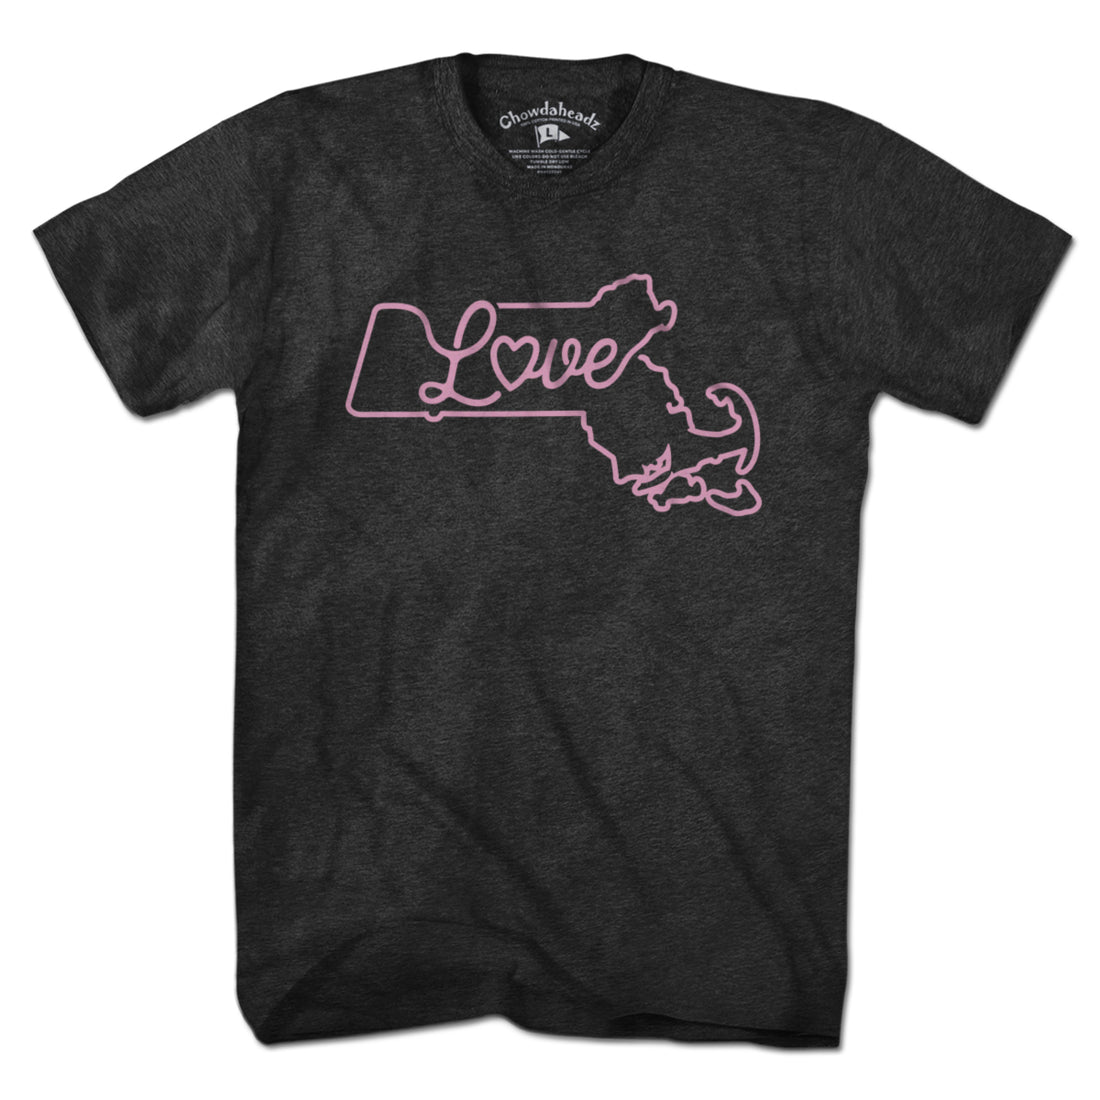 Love Massachusetts Script T-Shirt - Chowdaheadz